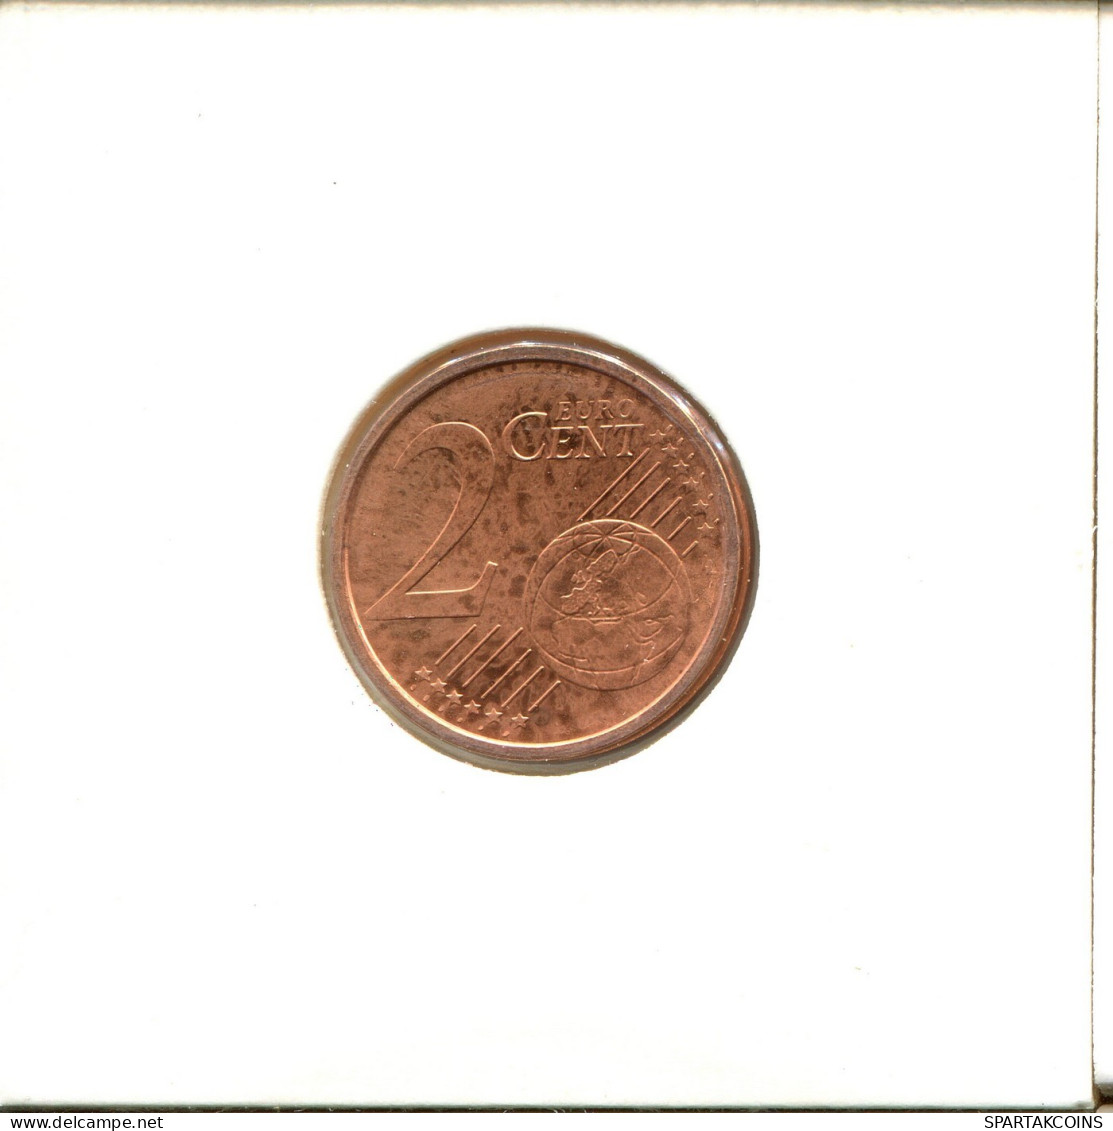 2 EURO CENTS 2009 ALEMANIA Moneda GERMANY #EU145.E.A - Germany